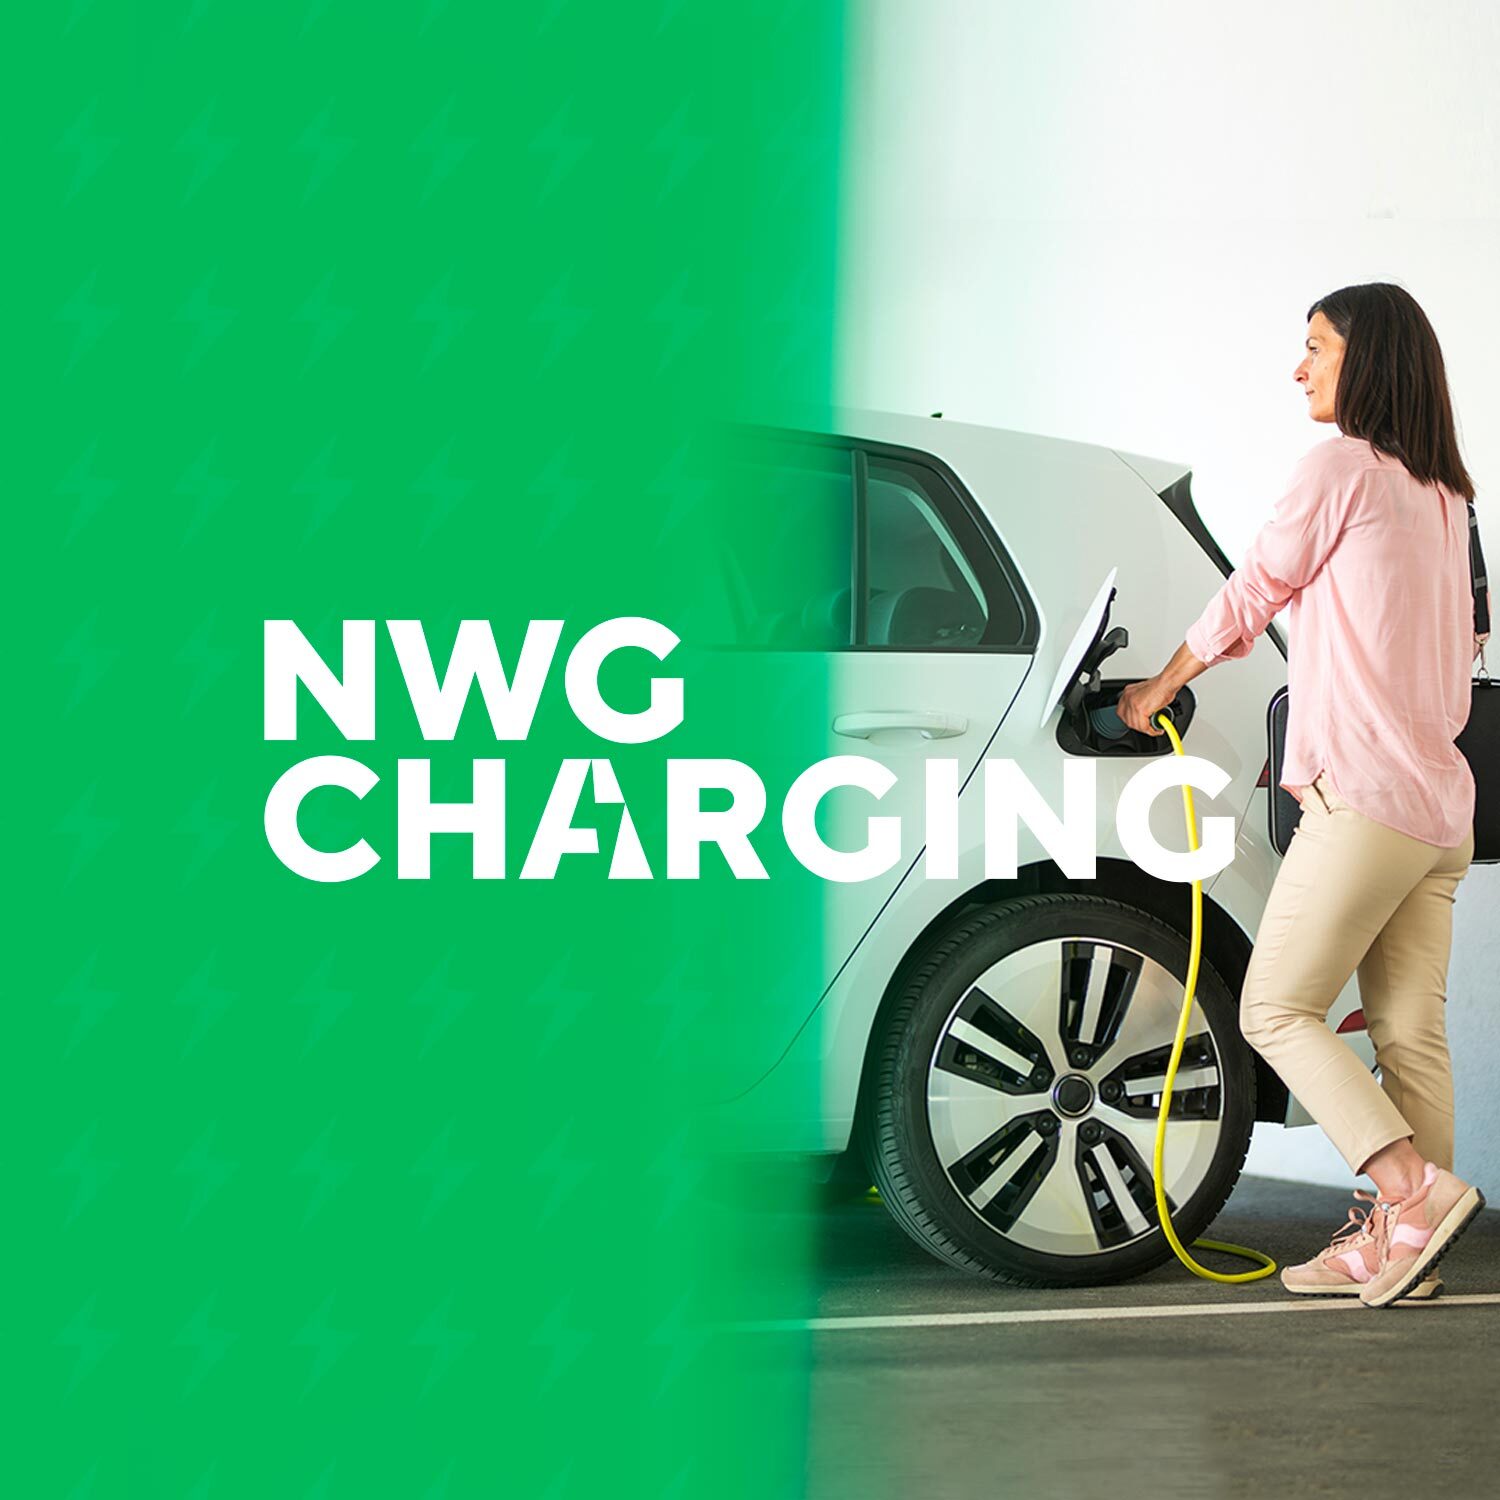 (c) Nwg-charging.com